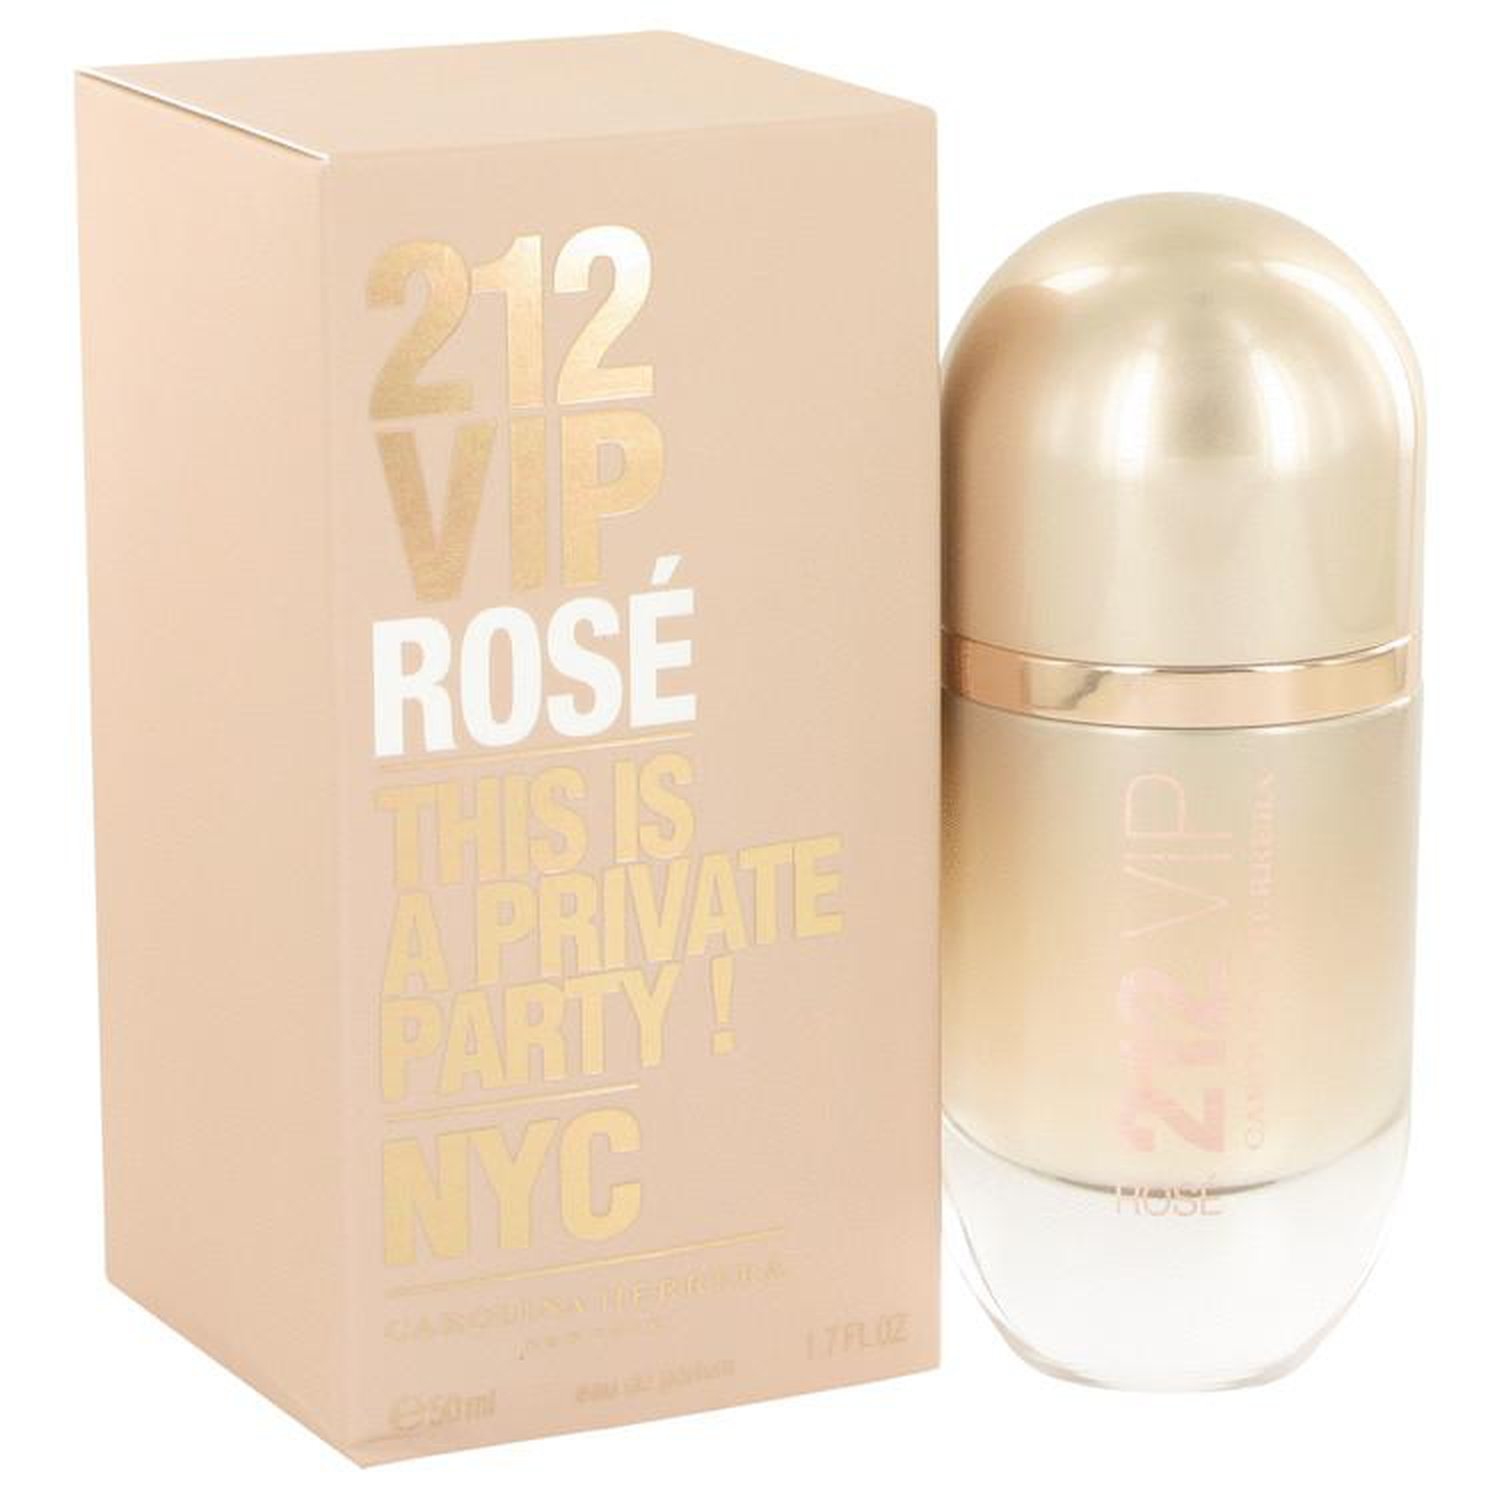 212 VIP Rose par Carolina Herrera Eau De Parfum Spray 1.7 oz (Femme) 50ml